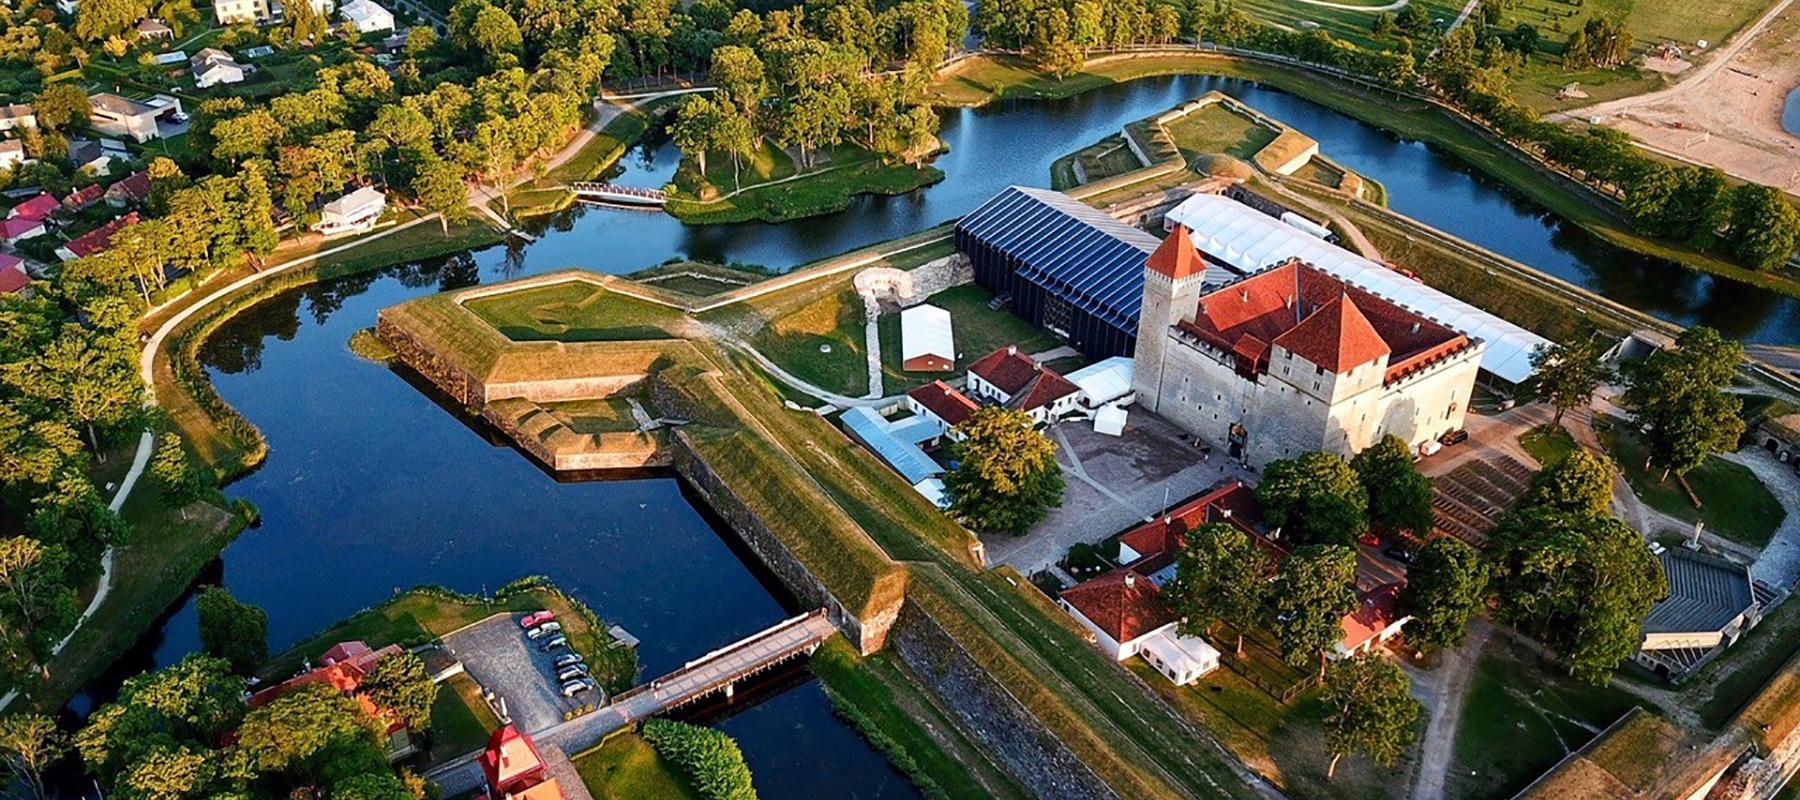 Die Opernfestspiele auf der Insel Saaremaa (dt.Ösel) ist das beliebteste Opernfestival Baltikums. Diese Festspiele werden im Hochsommer auf dem Hof de